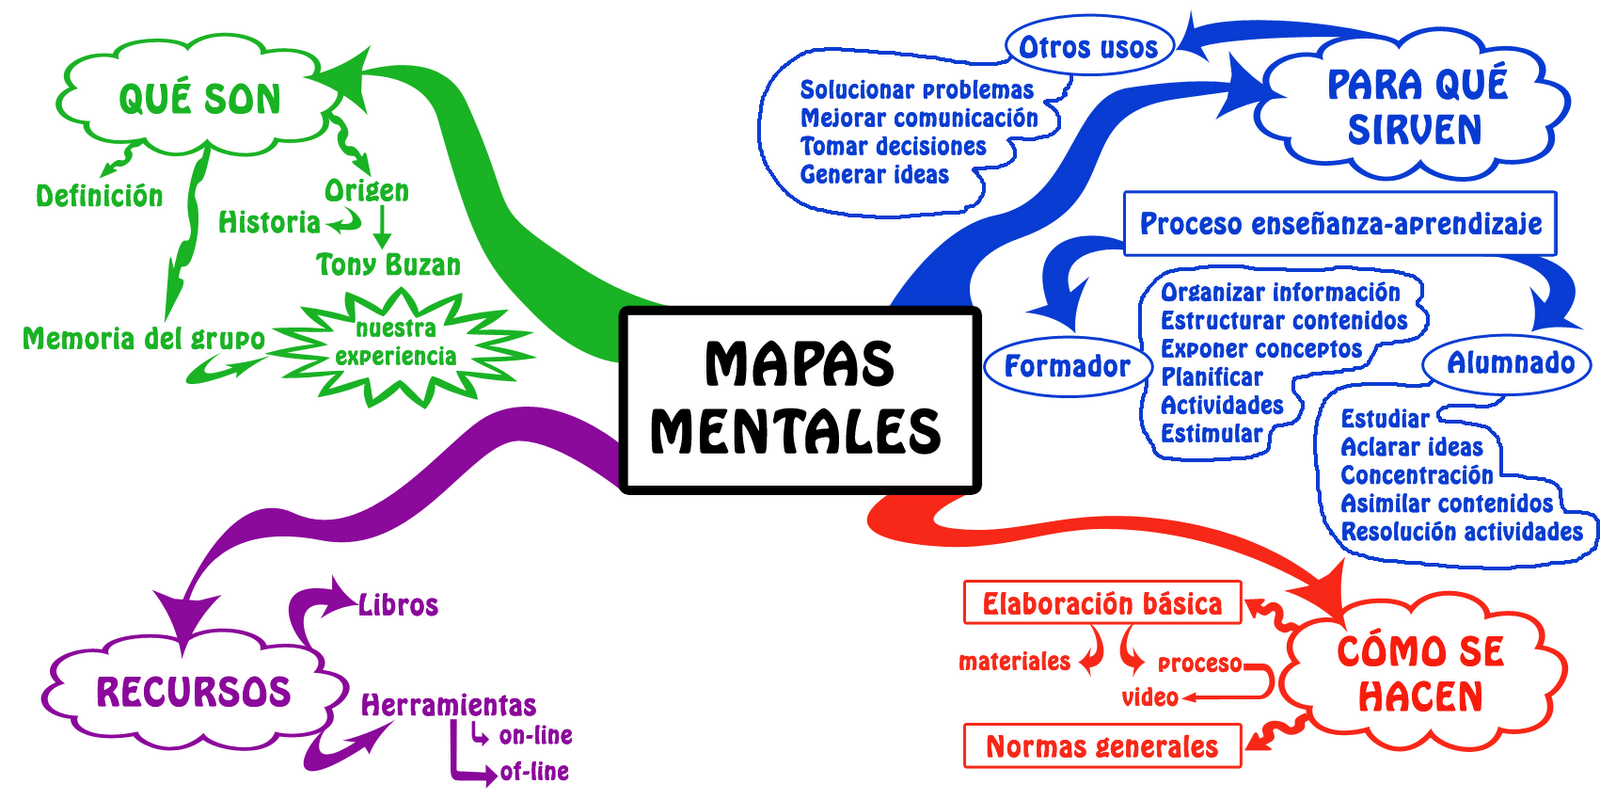 Mapa mental - gráficos